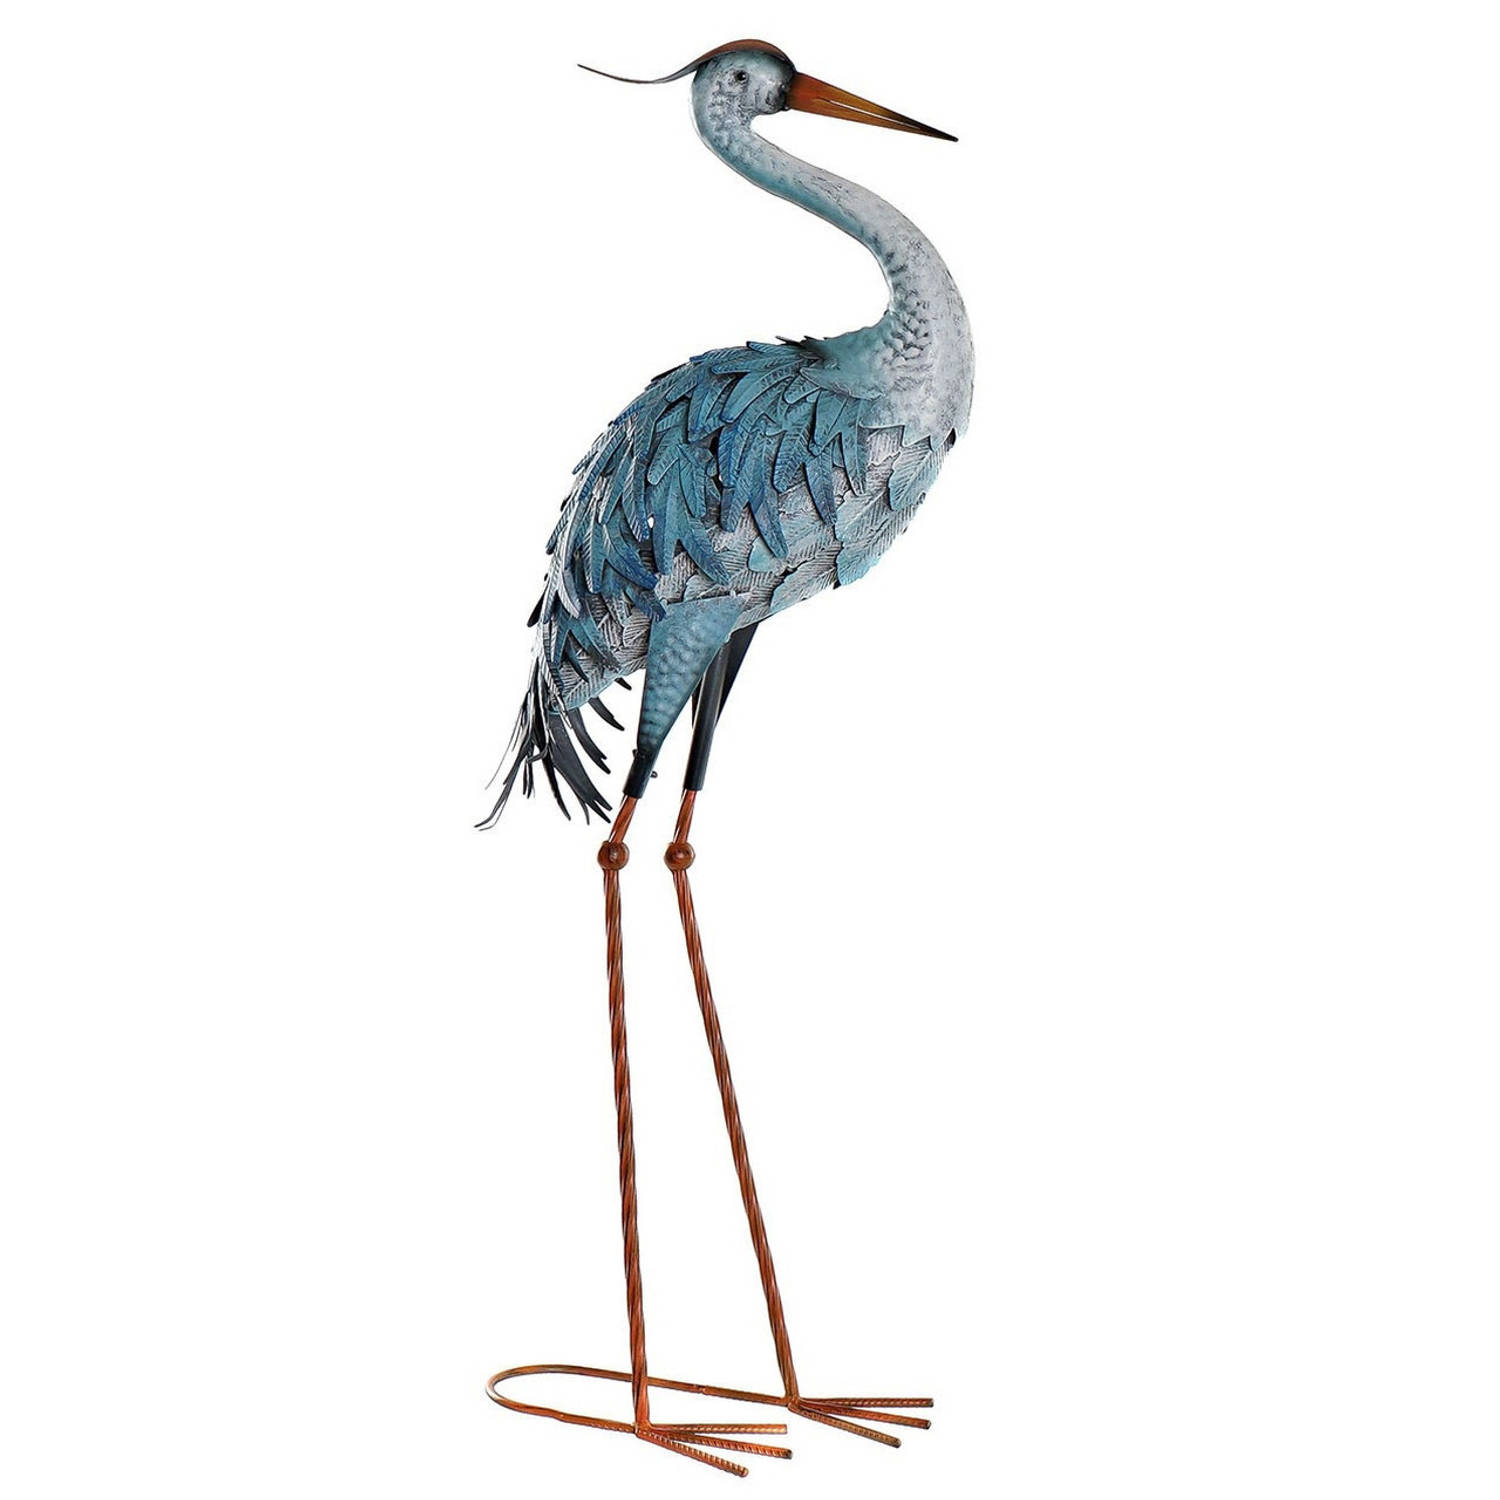 Items Tuin decoratie dieren/vogel beeld - Metaal - Reiger staand - 33 x 85 cm - buiten - blauw - Tuinbeelden